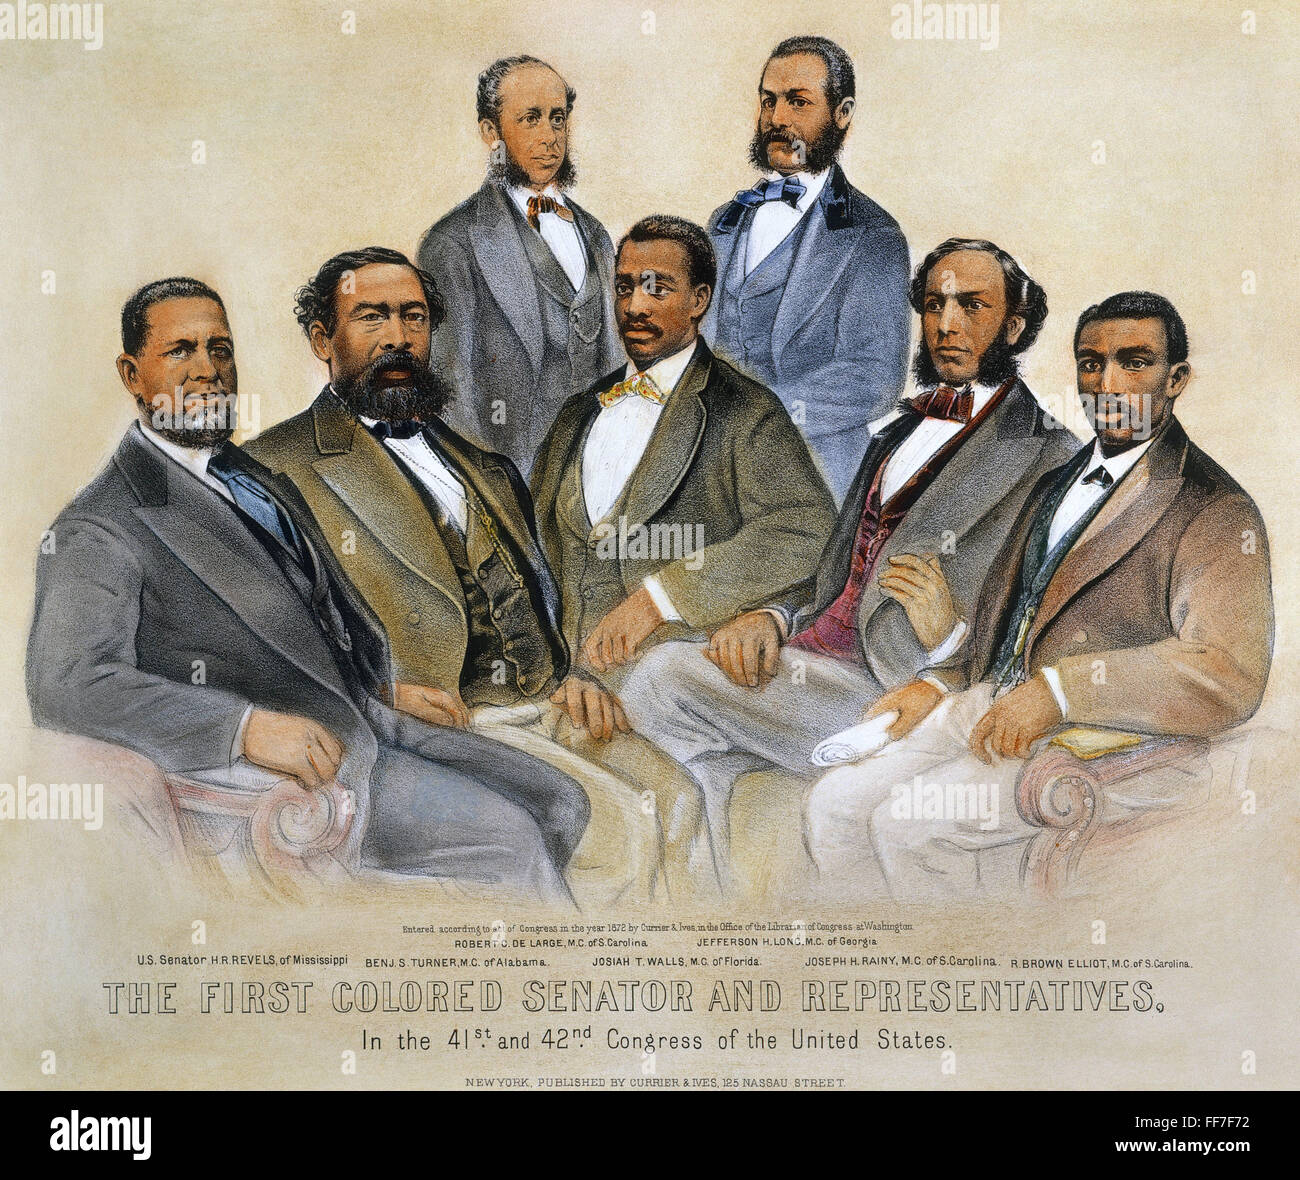 Sénateurs noir, 1872. /N'Til couleur premiers sénateurs et représentants dans le 41e et 42e Congrès de l'United States." lithographie, 1872, par Currier & Ives. Banque D'Images